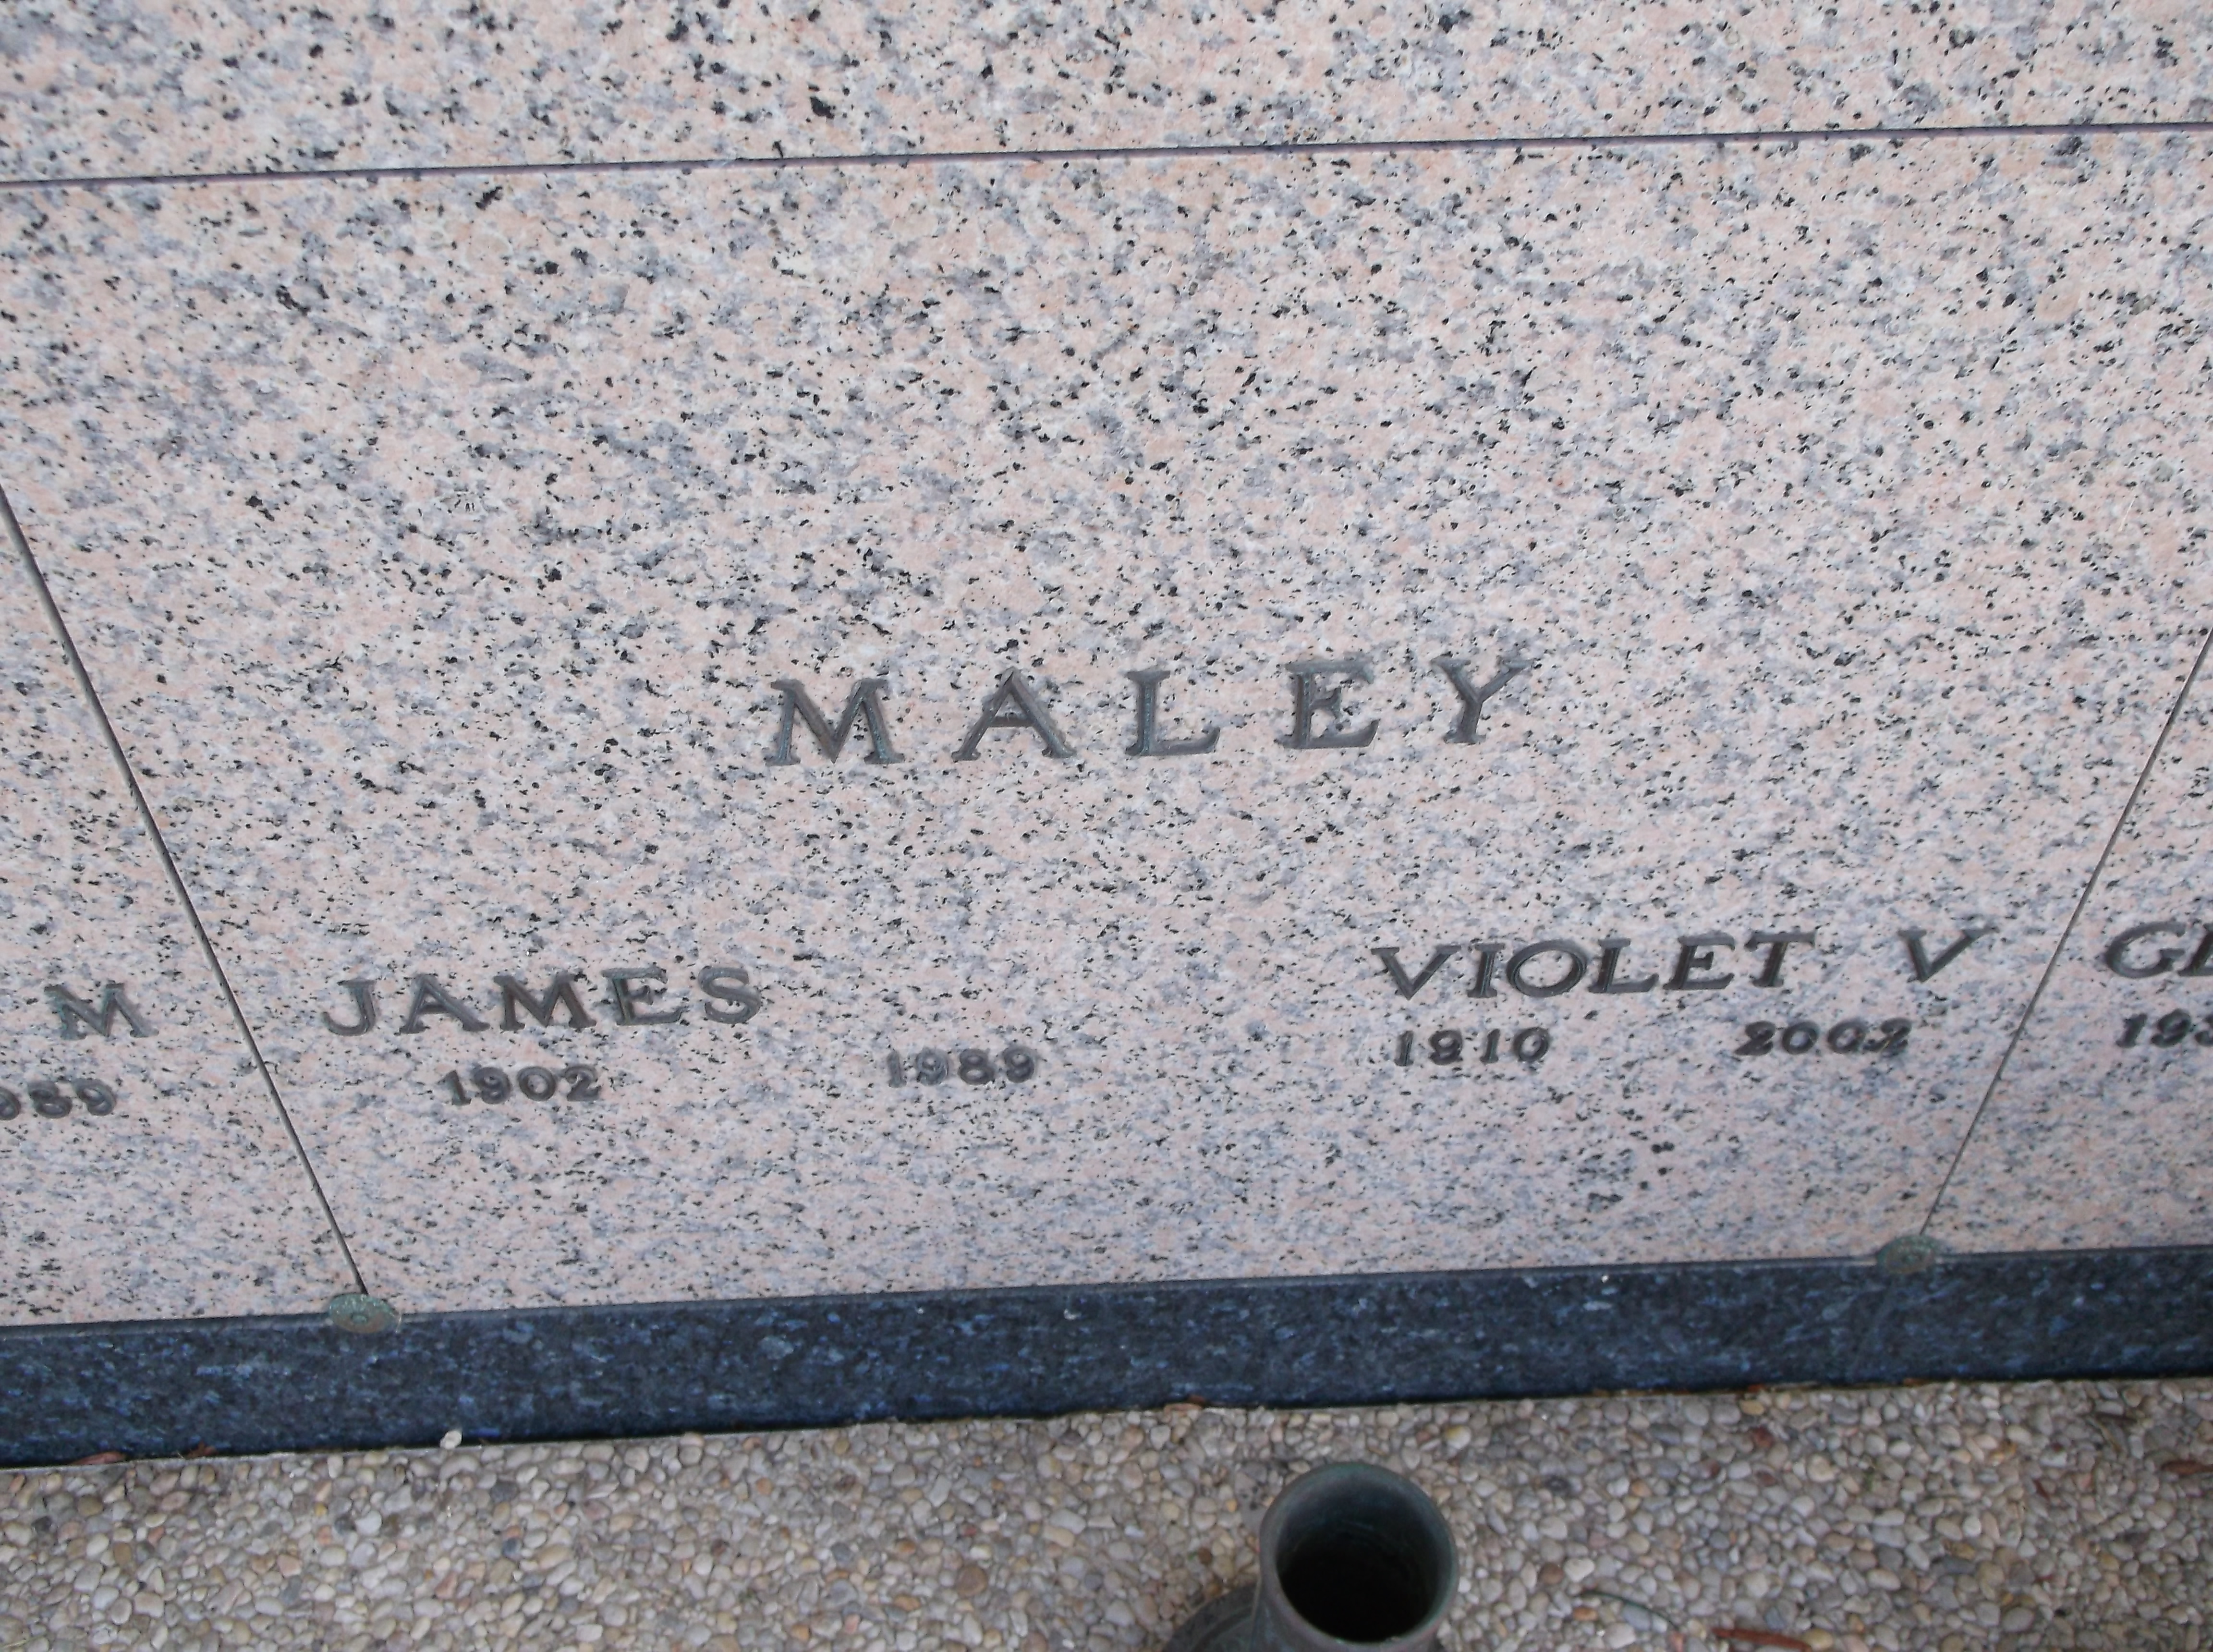 Violet V Maley